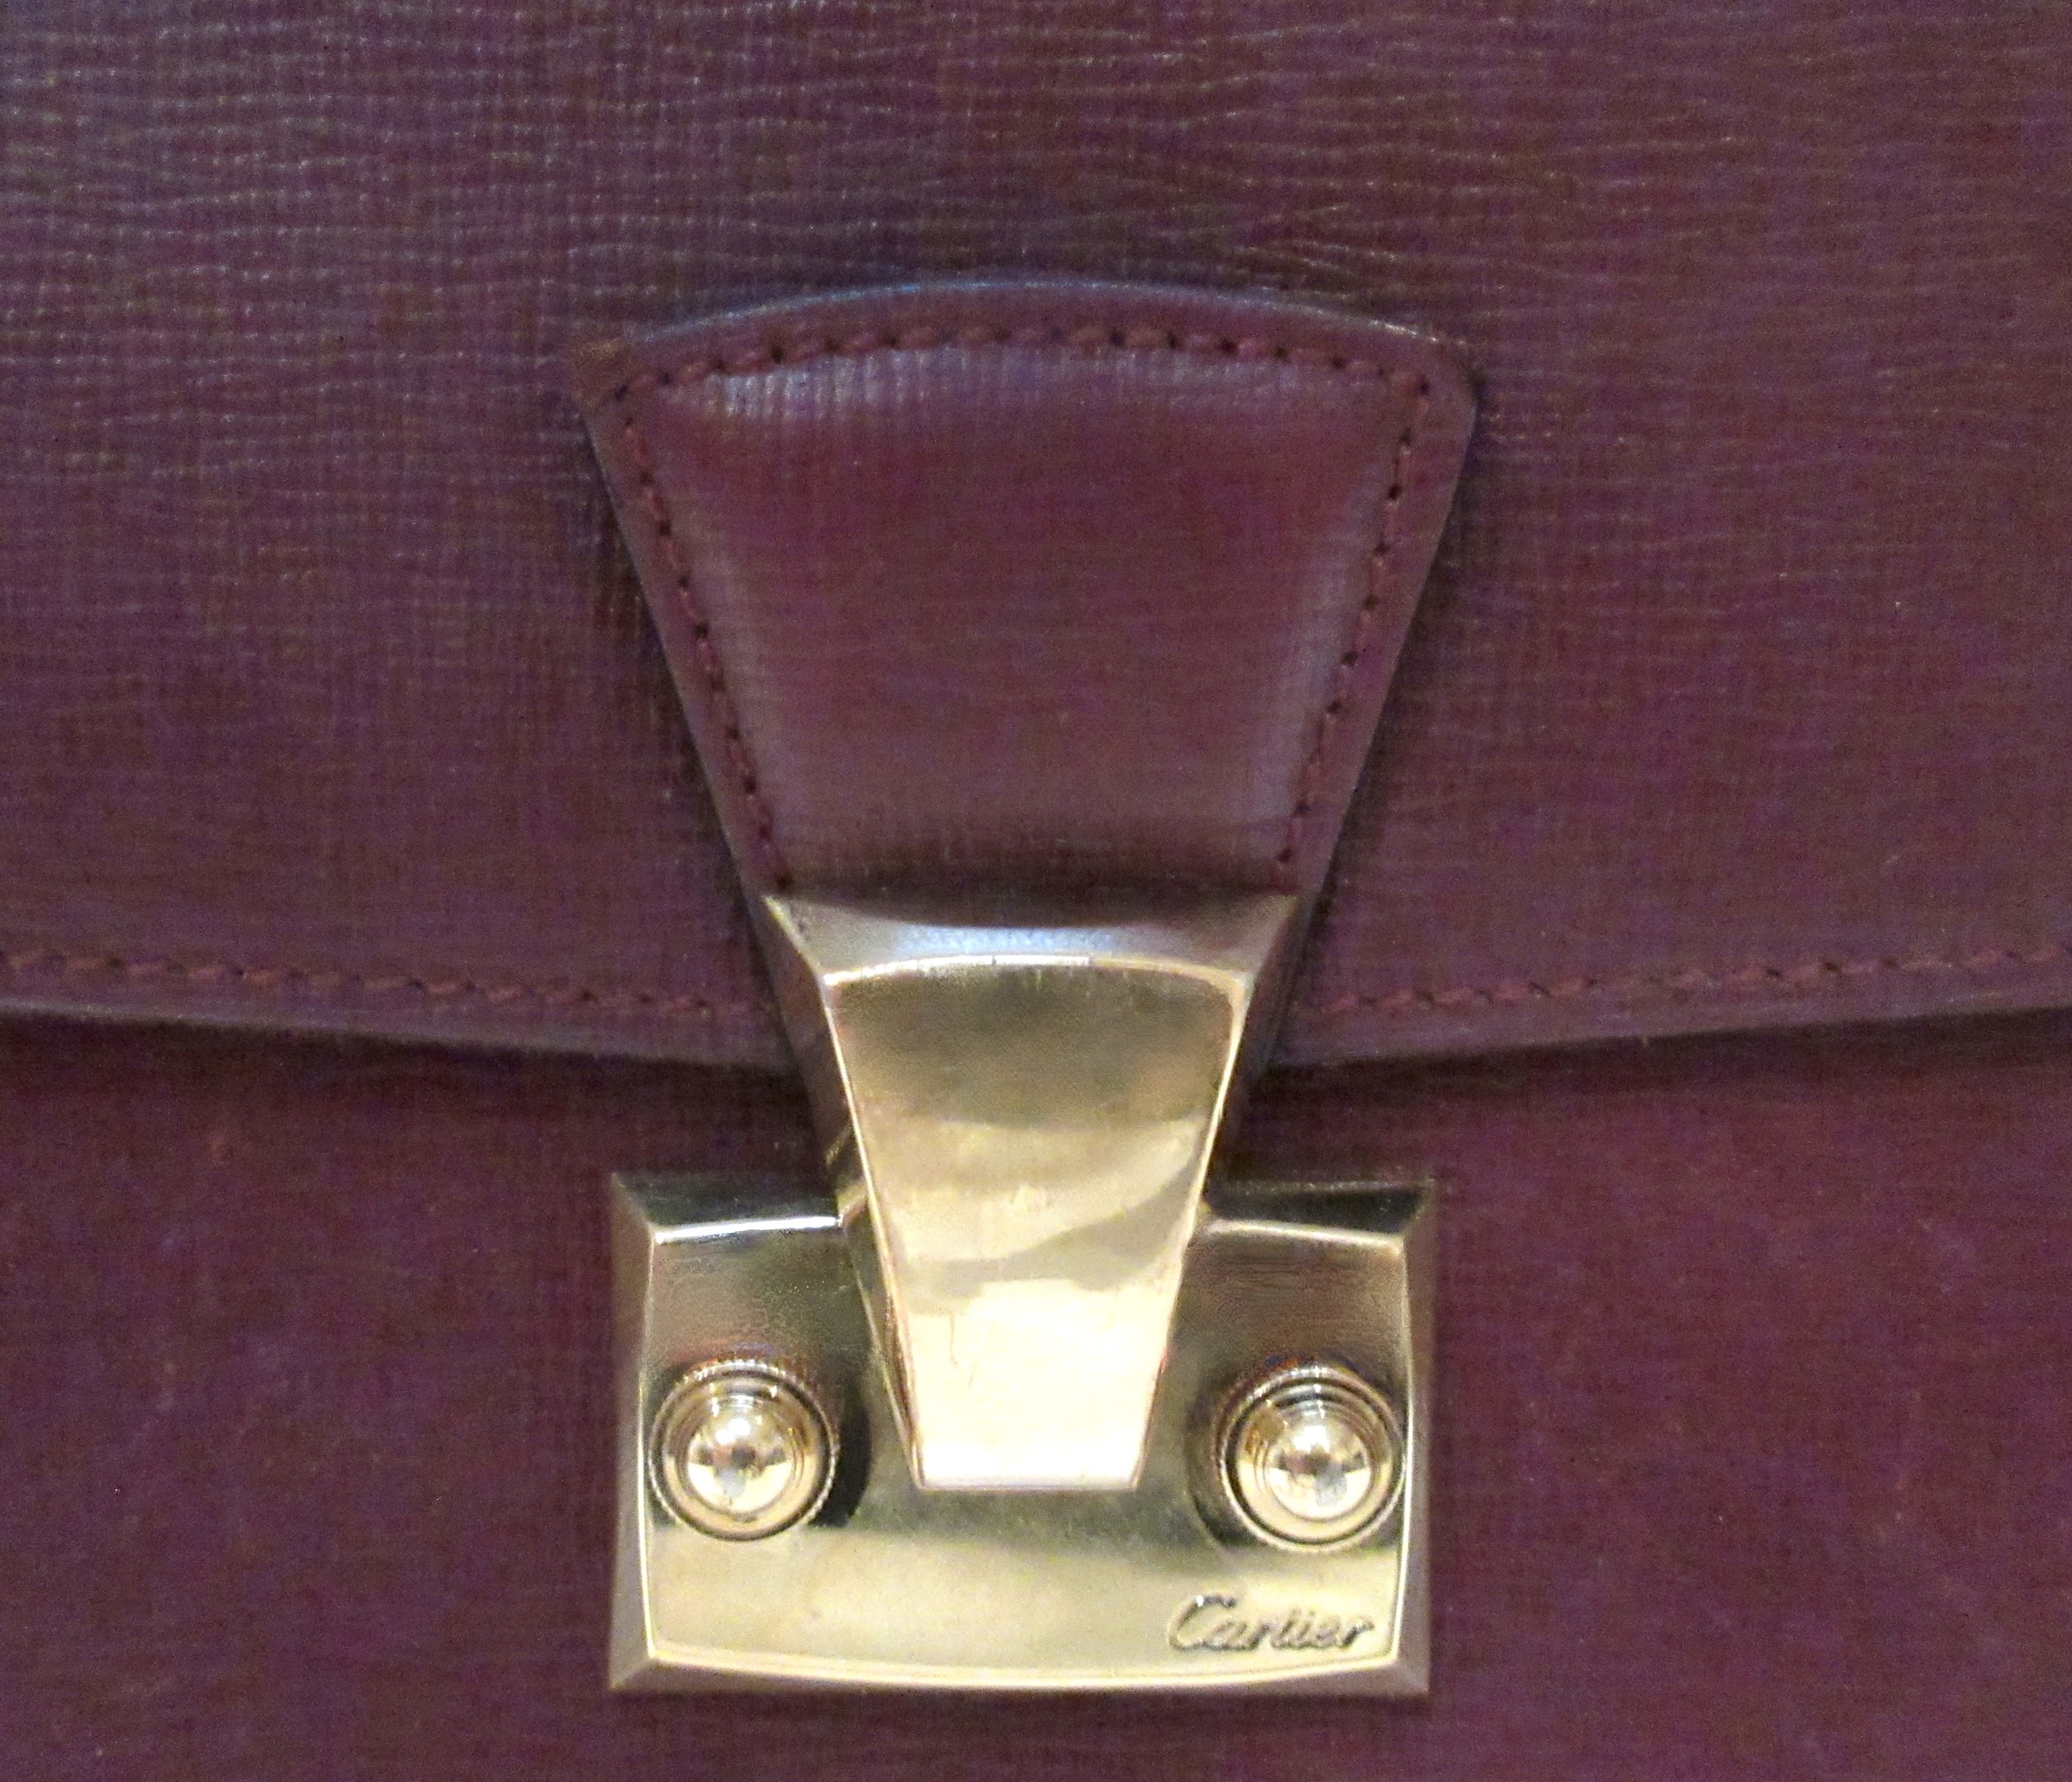 Cartier Pasha Leather Clutch Bag~P77690312